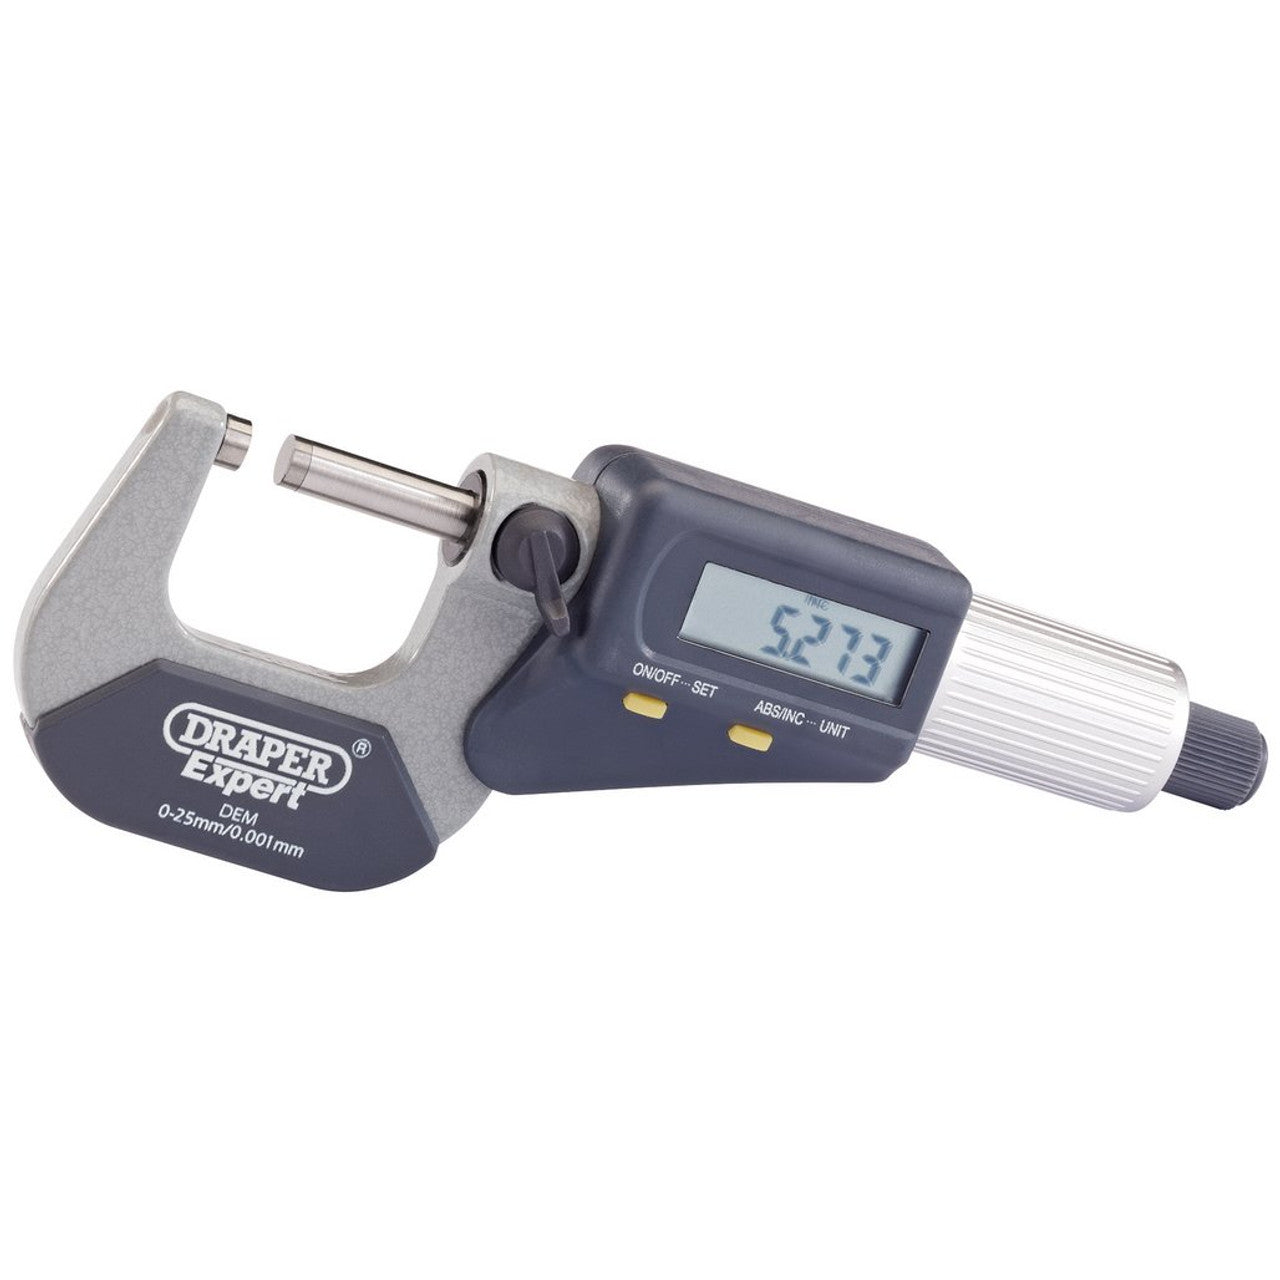 Draper 46599 Dual Reading Digital External Micrometer, 0 - 25mm/0 - 1"